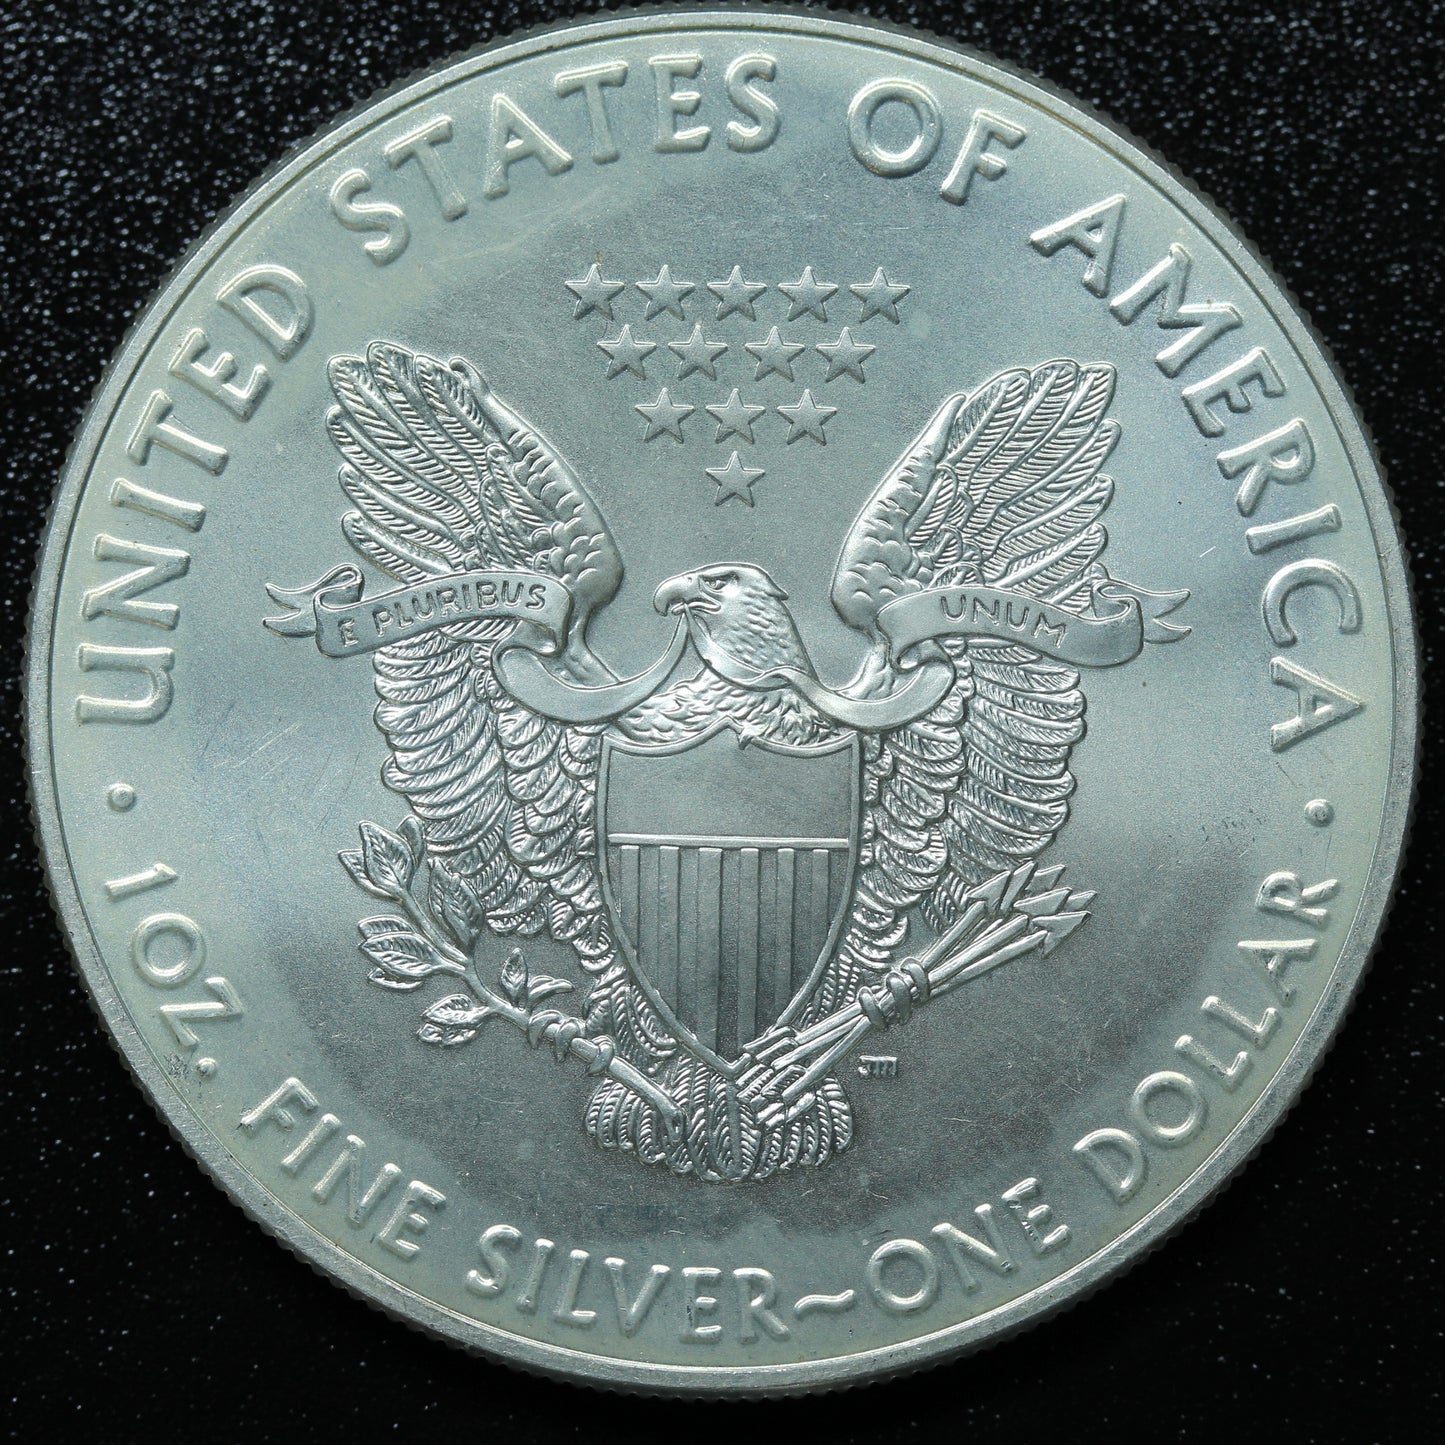 2017 American Silver Eagle $1 .999 Fine Silver Coin Marks/Spots